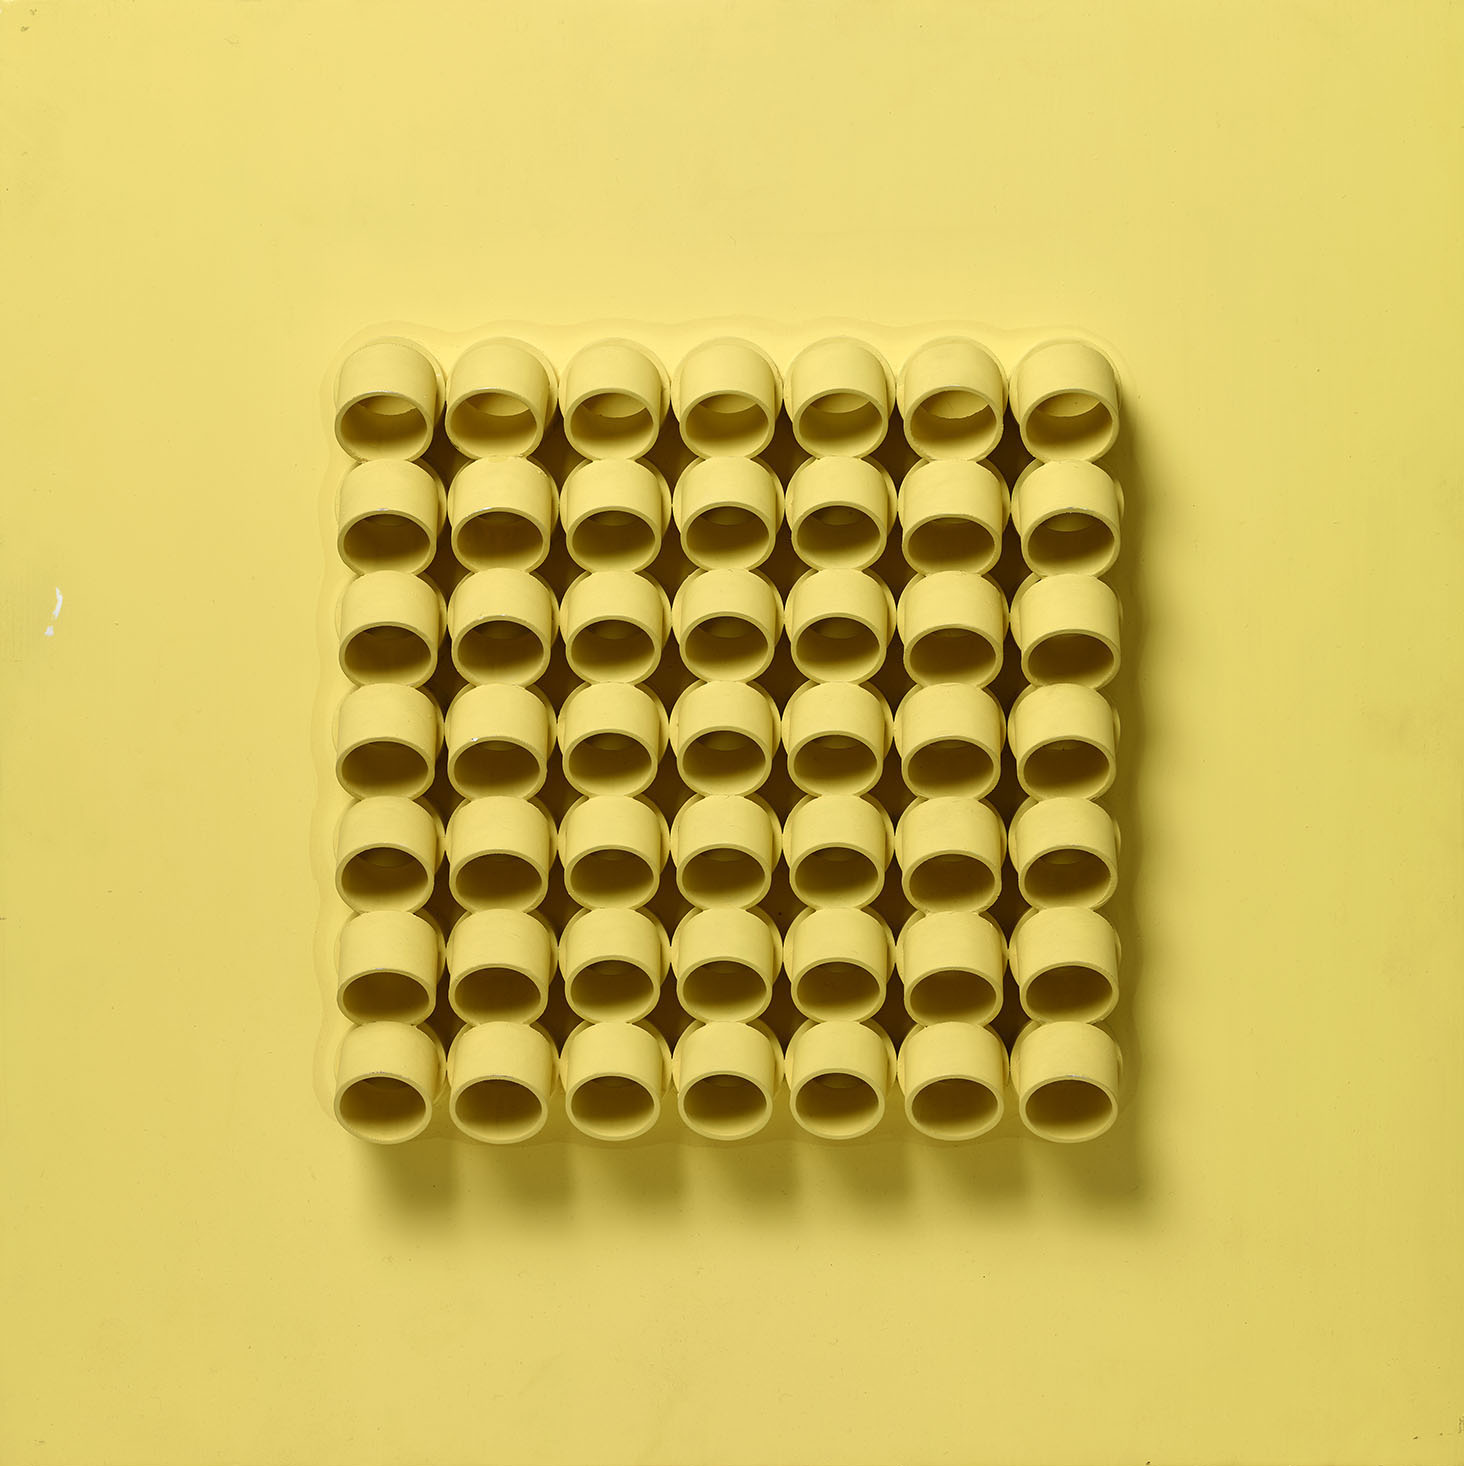 Composició geomètrica, 1972, tècnica mixta, cm 40 x 40